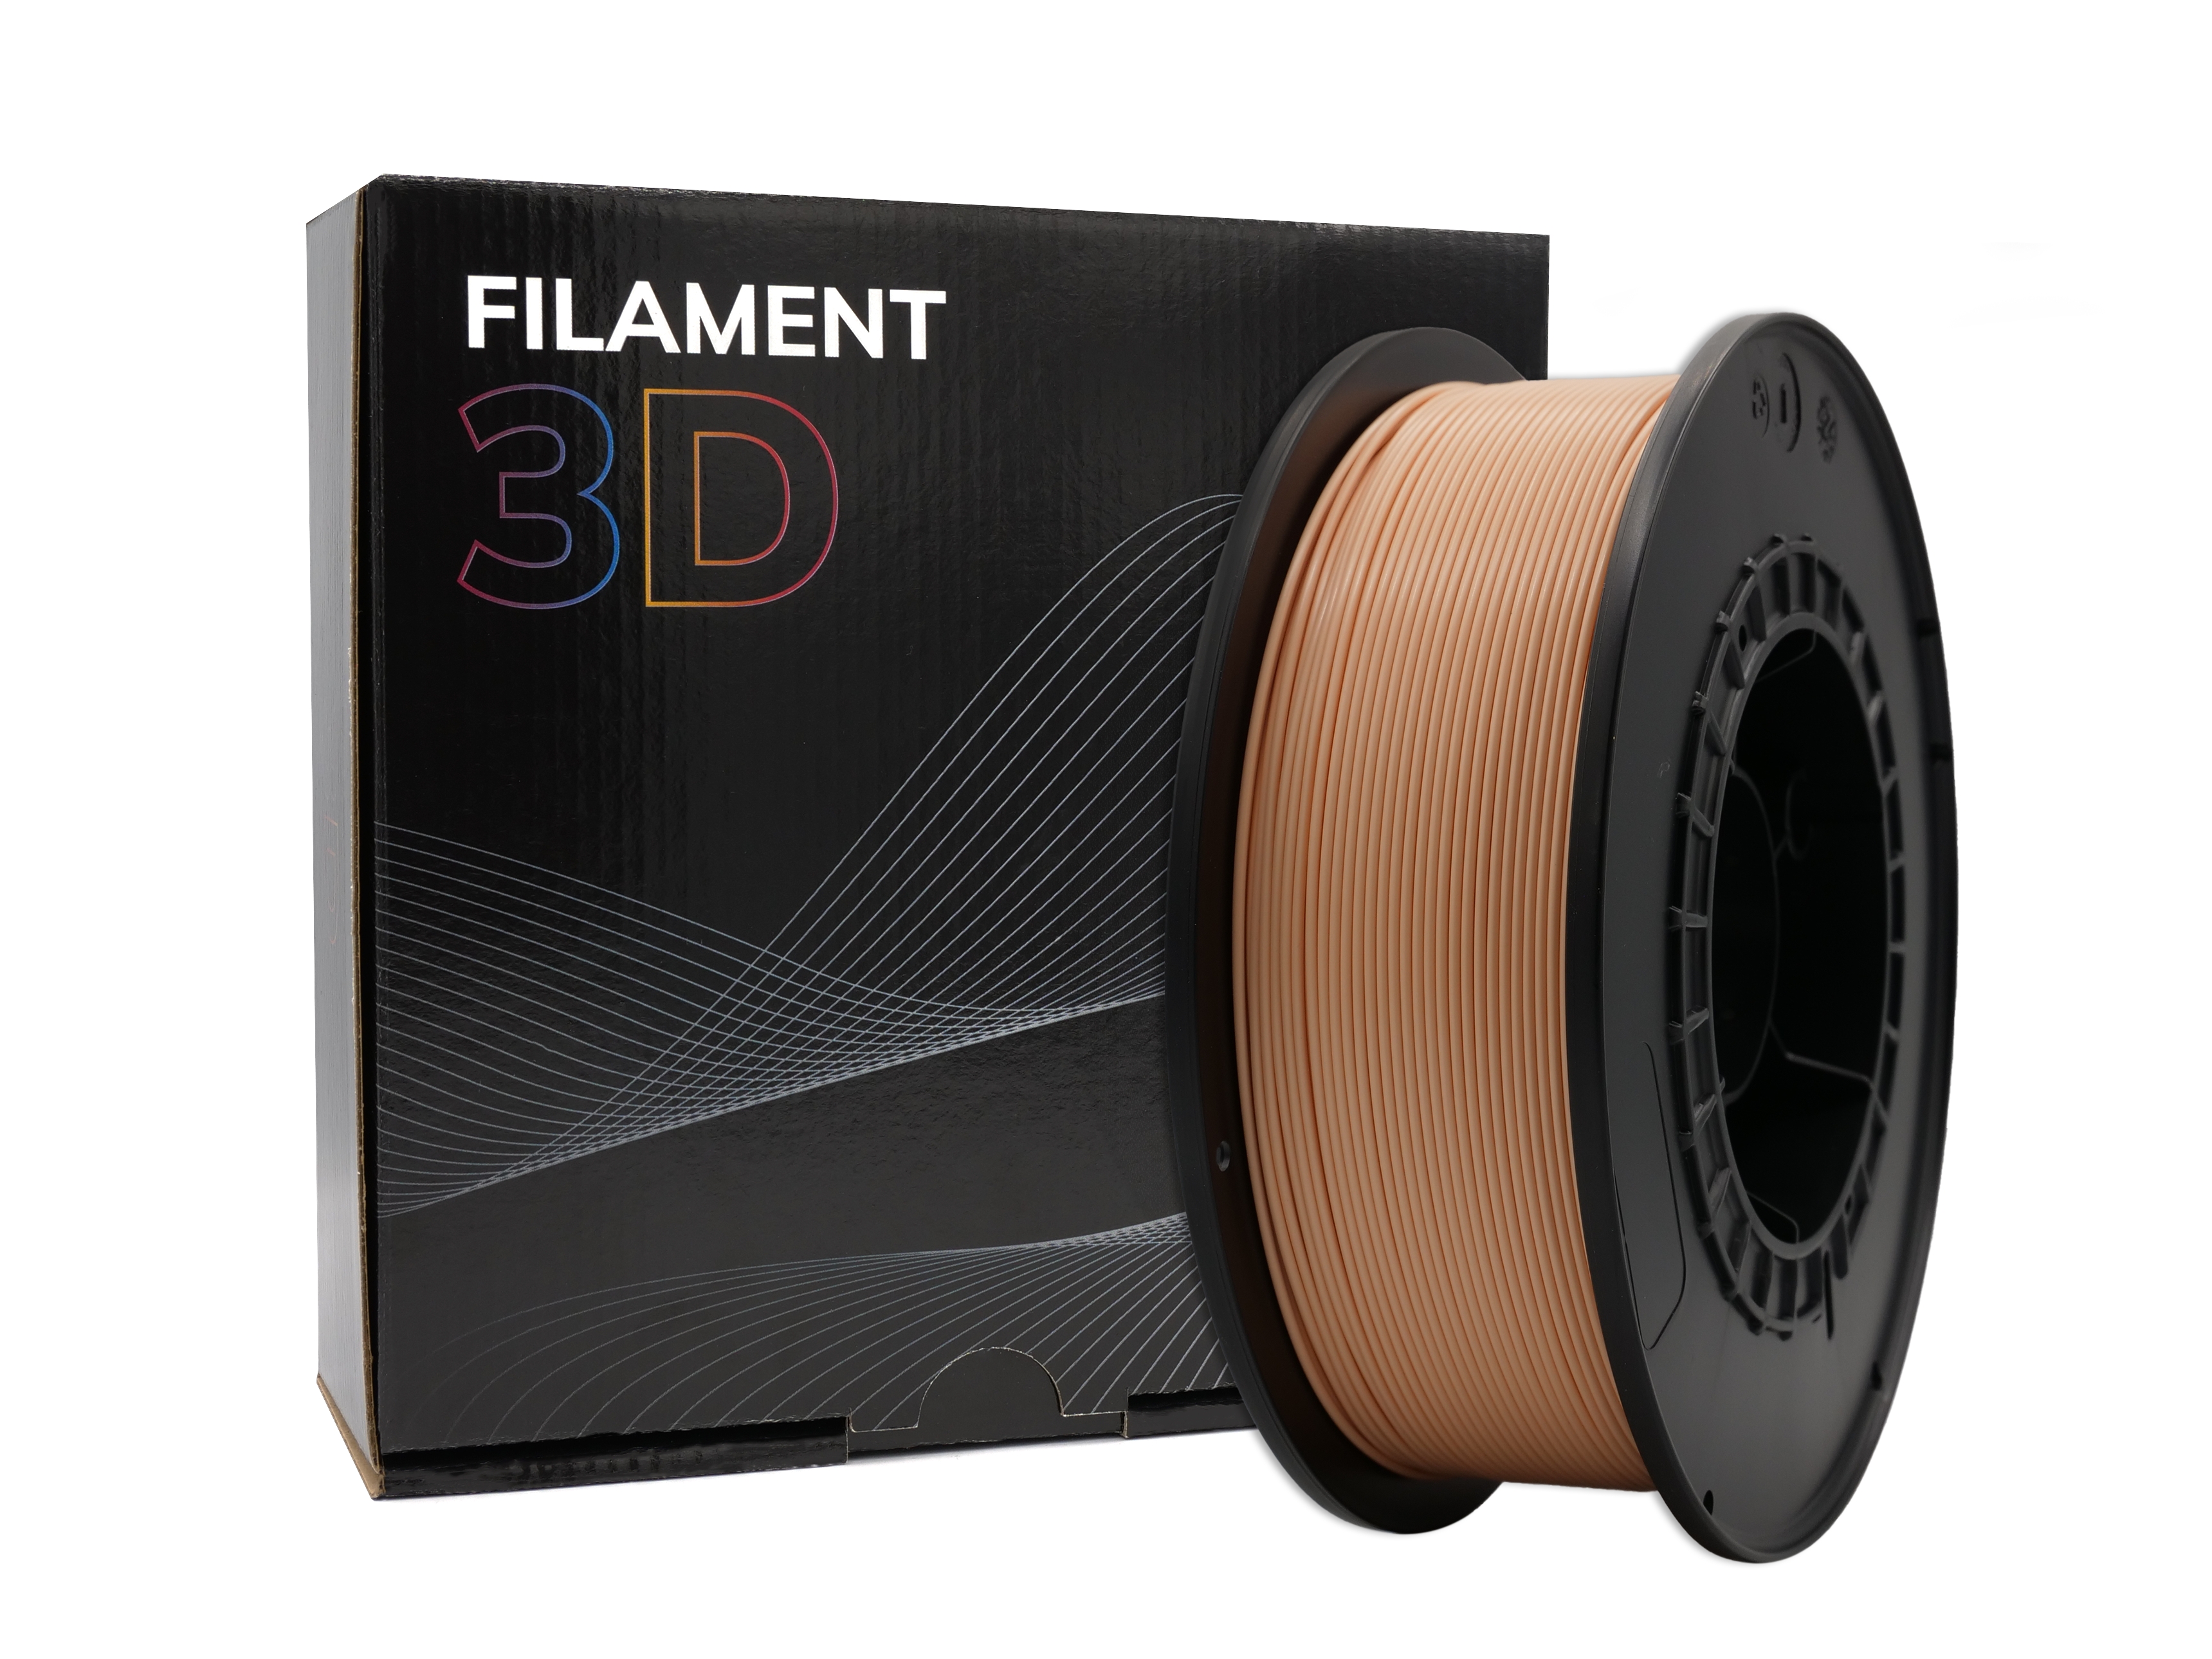 Filament PLA 3D - Diamètre 1.75mm - Bobine 1kg - Couleur Pêche Clair